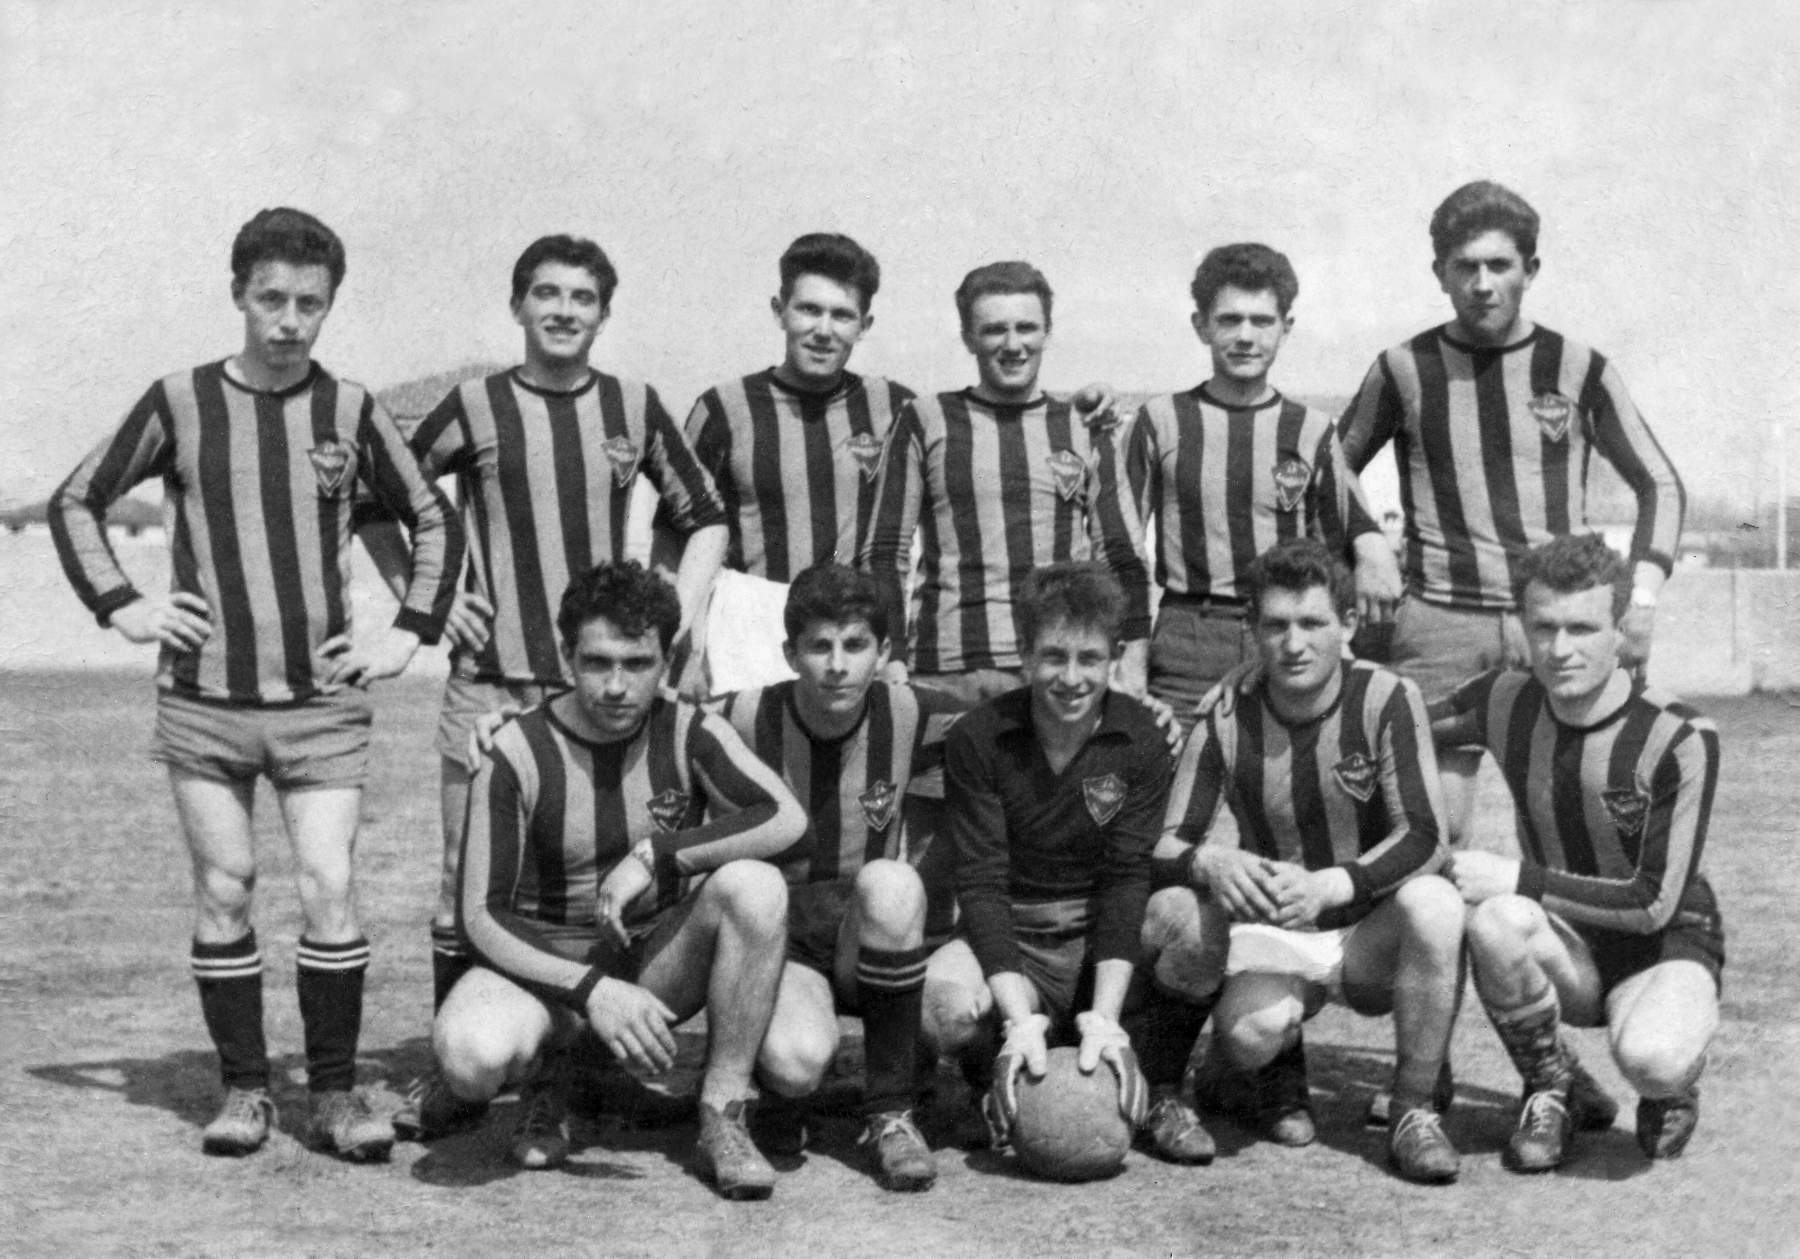 Tonello Renato, Merlo Sergio, Franco Gatto, Comazzetto Antonio, Trevisi Mario, Piero Mazzoccato, Remo Cervi, Giuseppe Tesser e altri non riconosciuti.